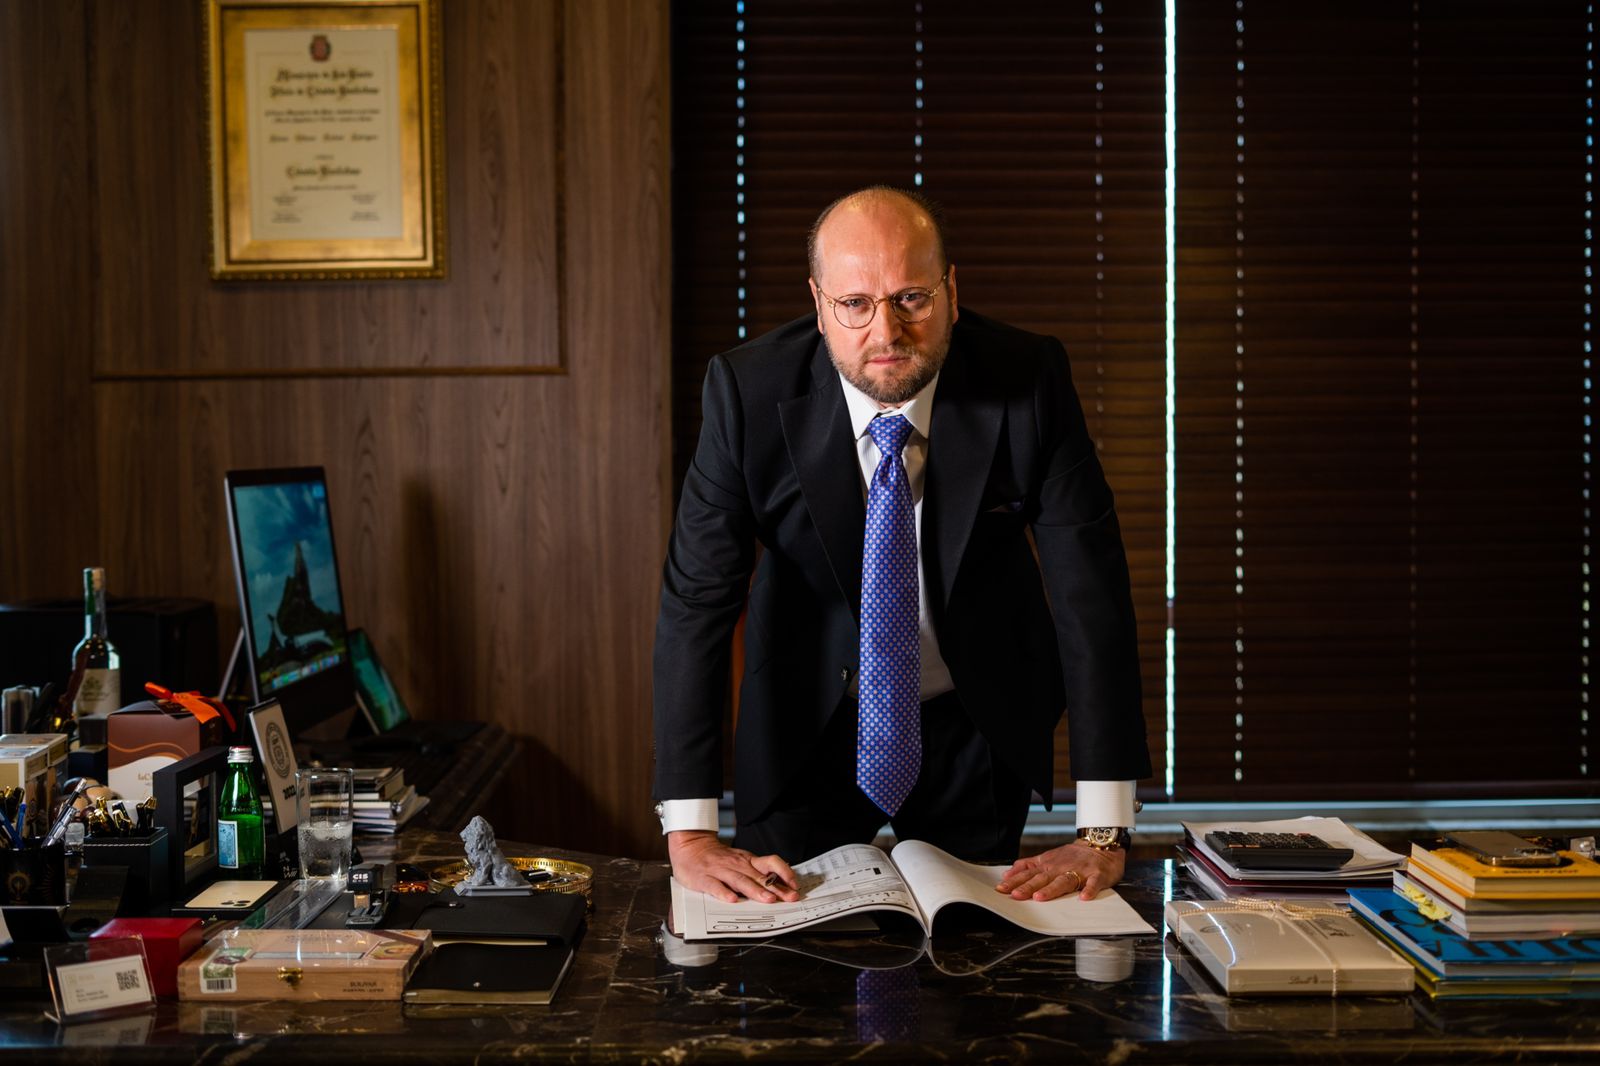 Nelson Wilians se torna maior escritório de advocacia após contrato com BB